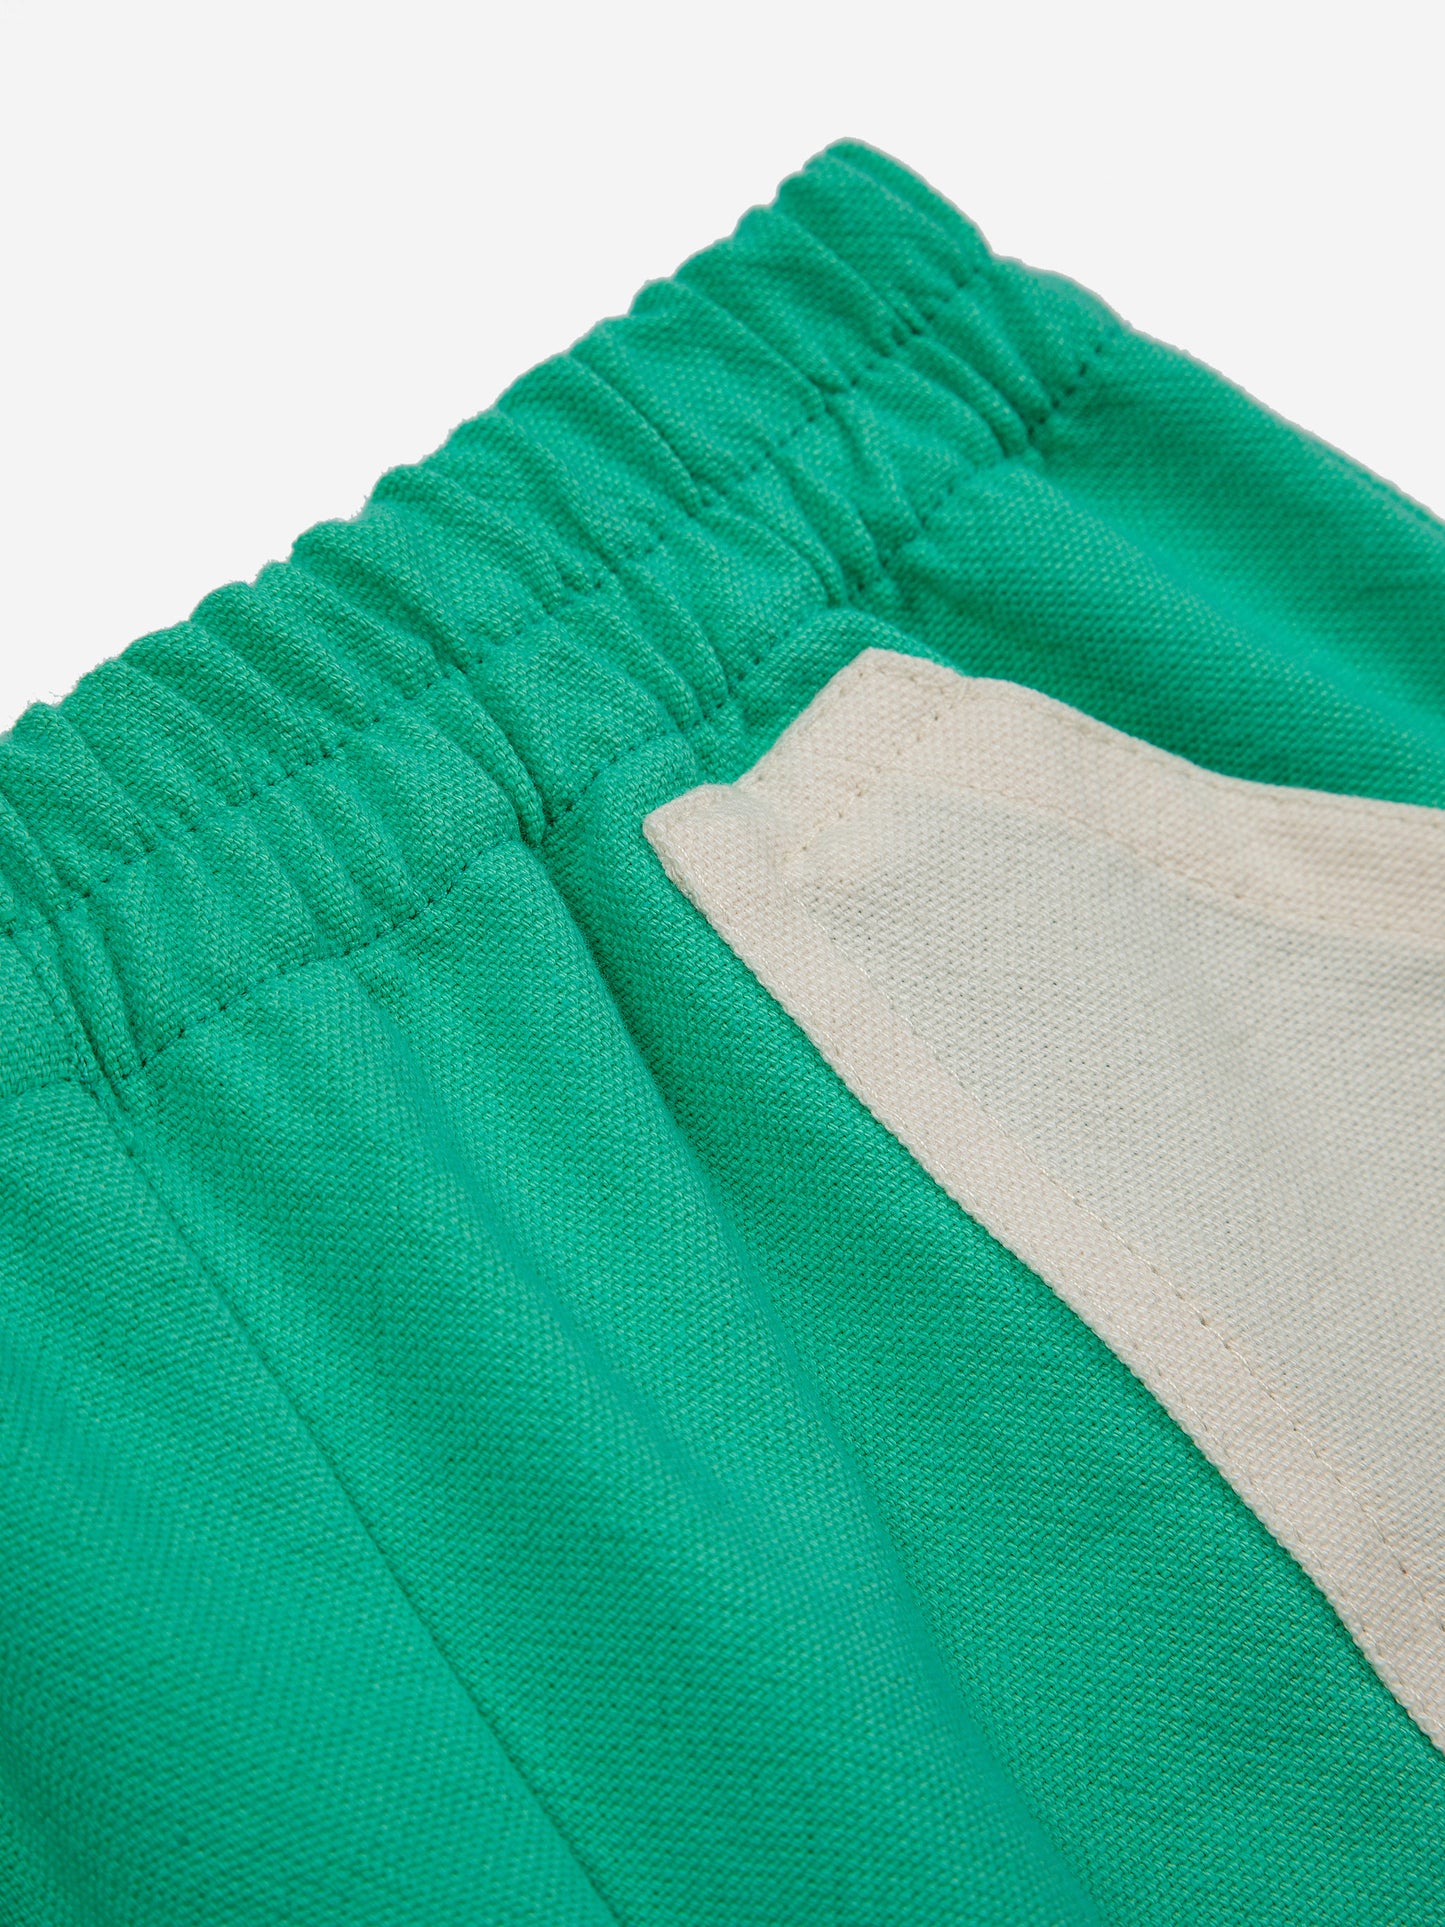 Pantalons curts amb butxaques d’un altre teixit